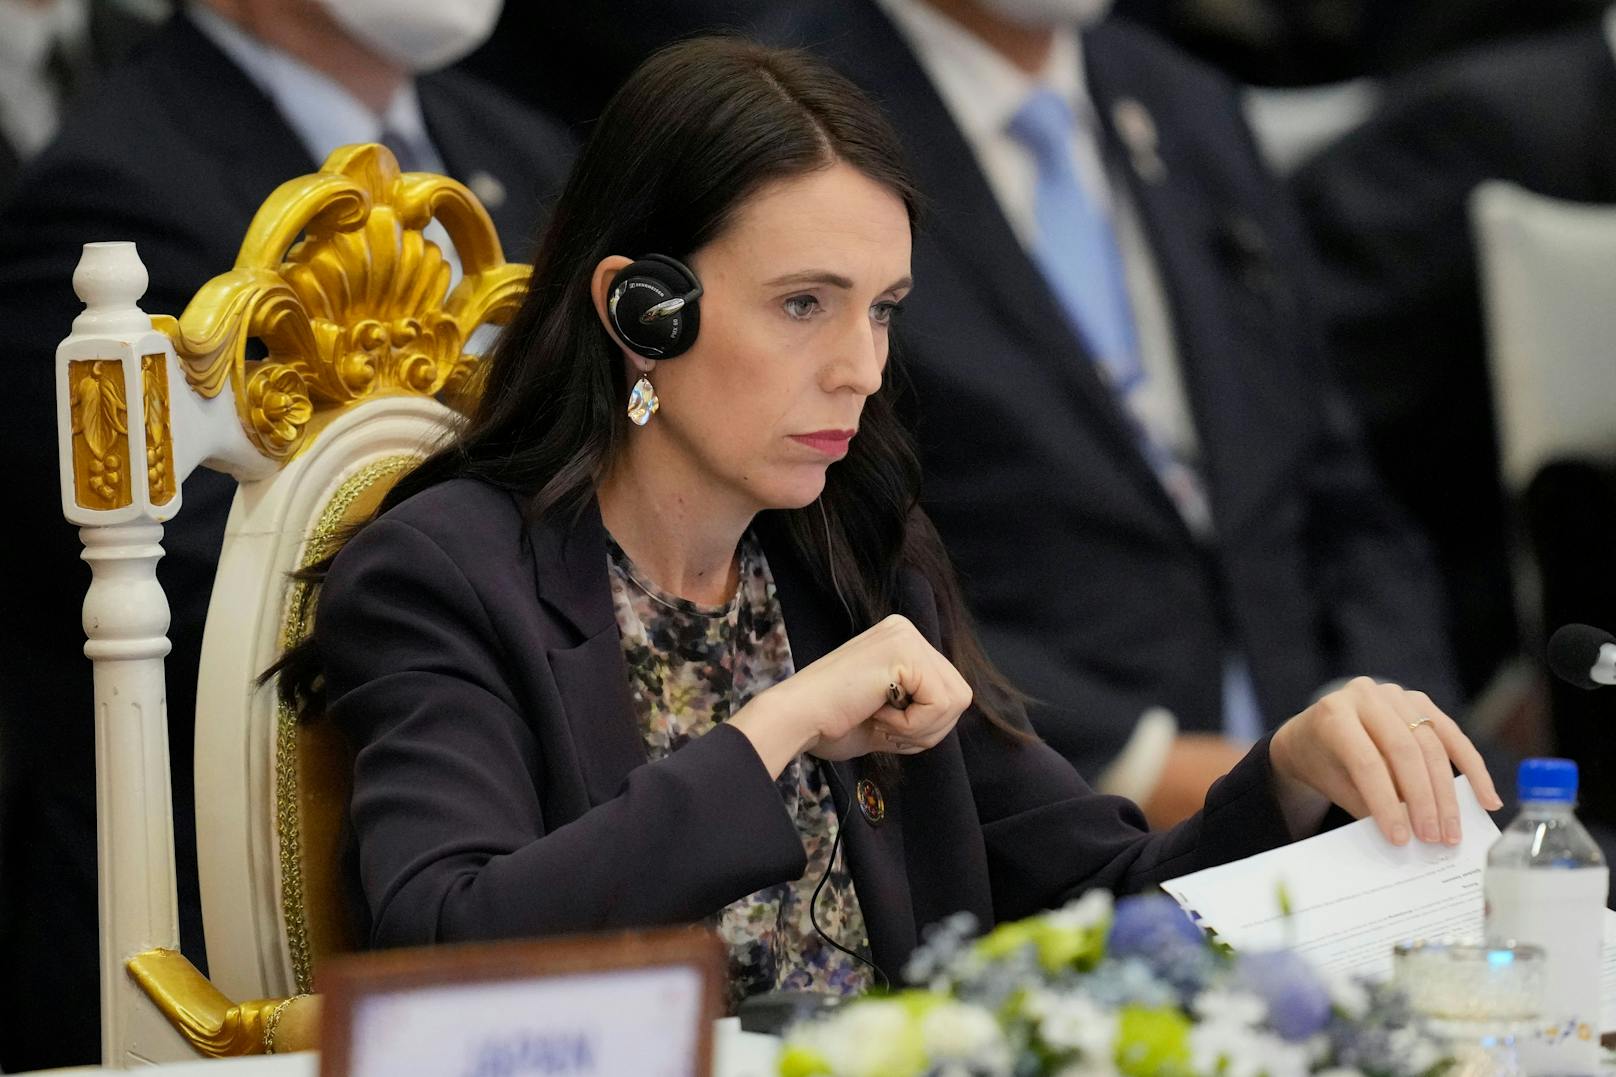 Die neuseeländische Premierministerin dachte, dass ihr Mikrofon aus ist und bezeichnete einen Abgeordneten als "arrogantes A***".